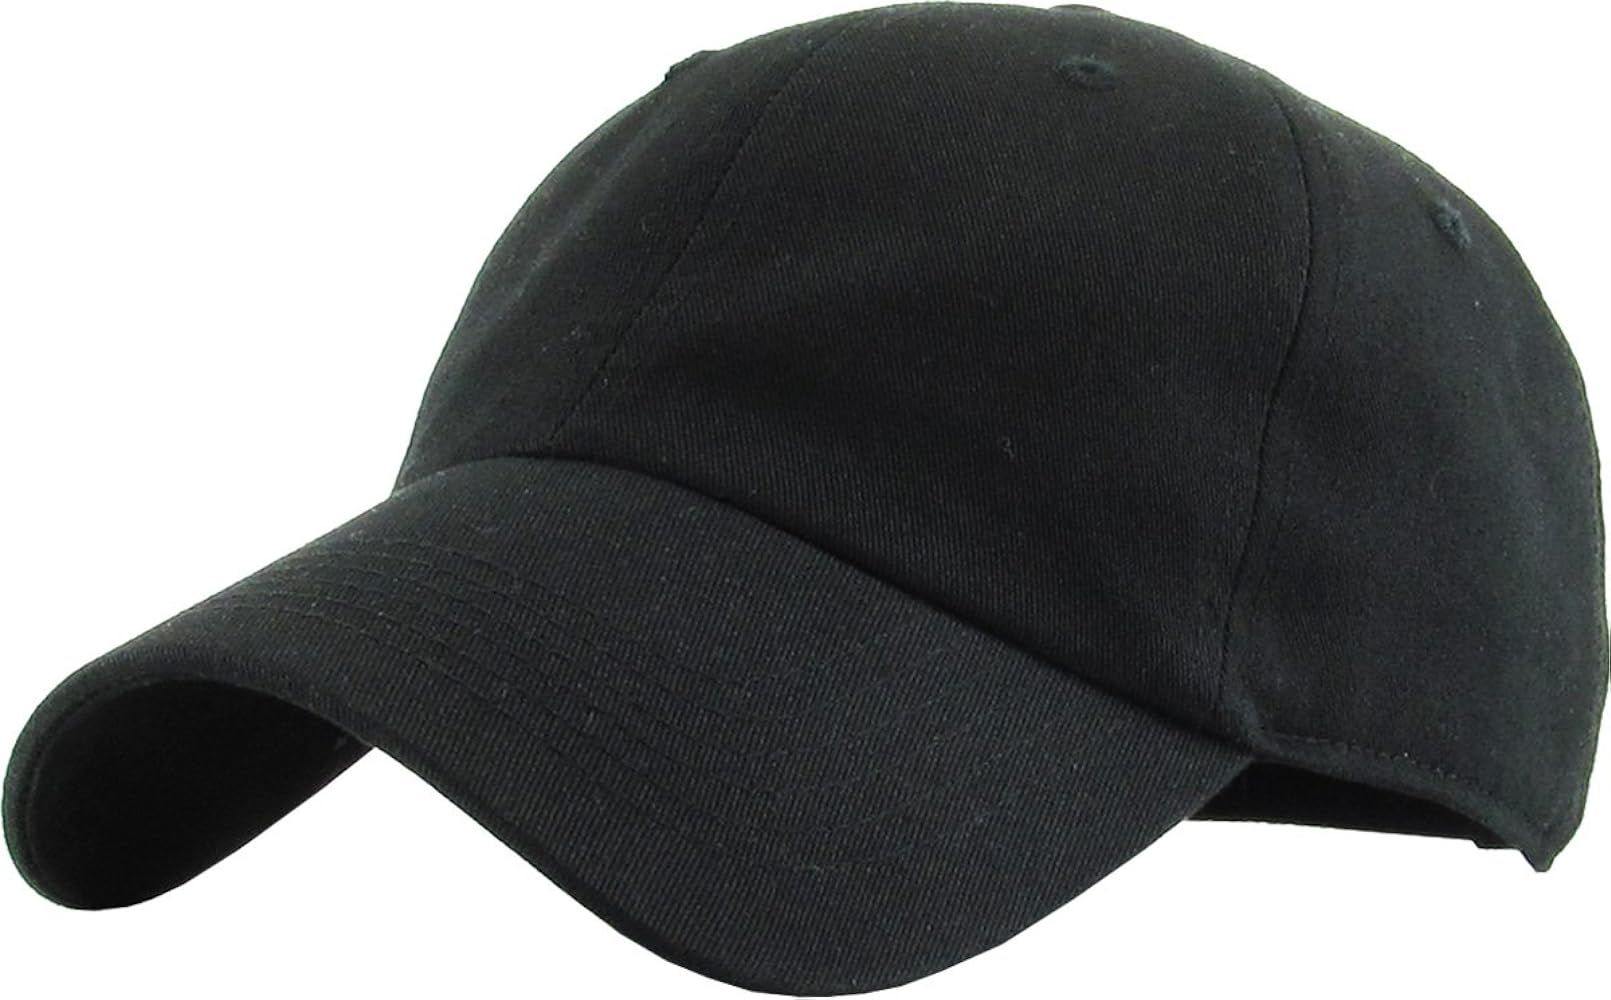 KBETHOS Original Classic Low Profile Cotton Hat Men Women Baseball Cap Dad Hat Adjustable Unconstruc | Amazon (US)